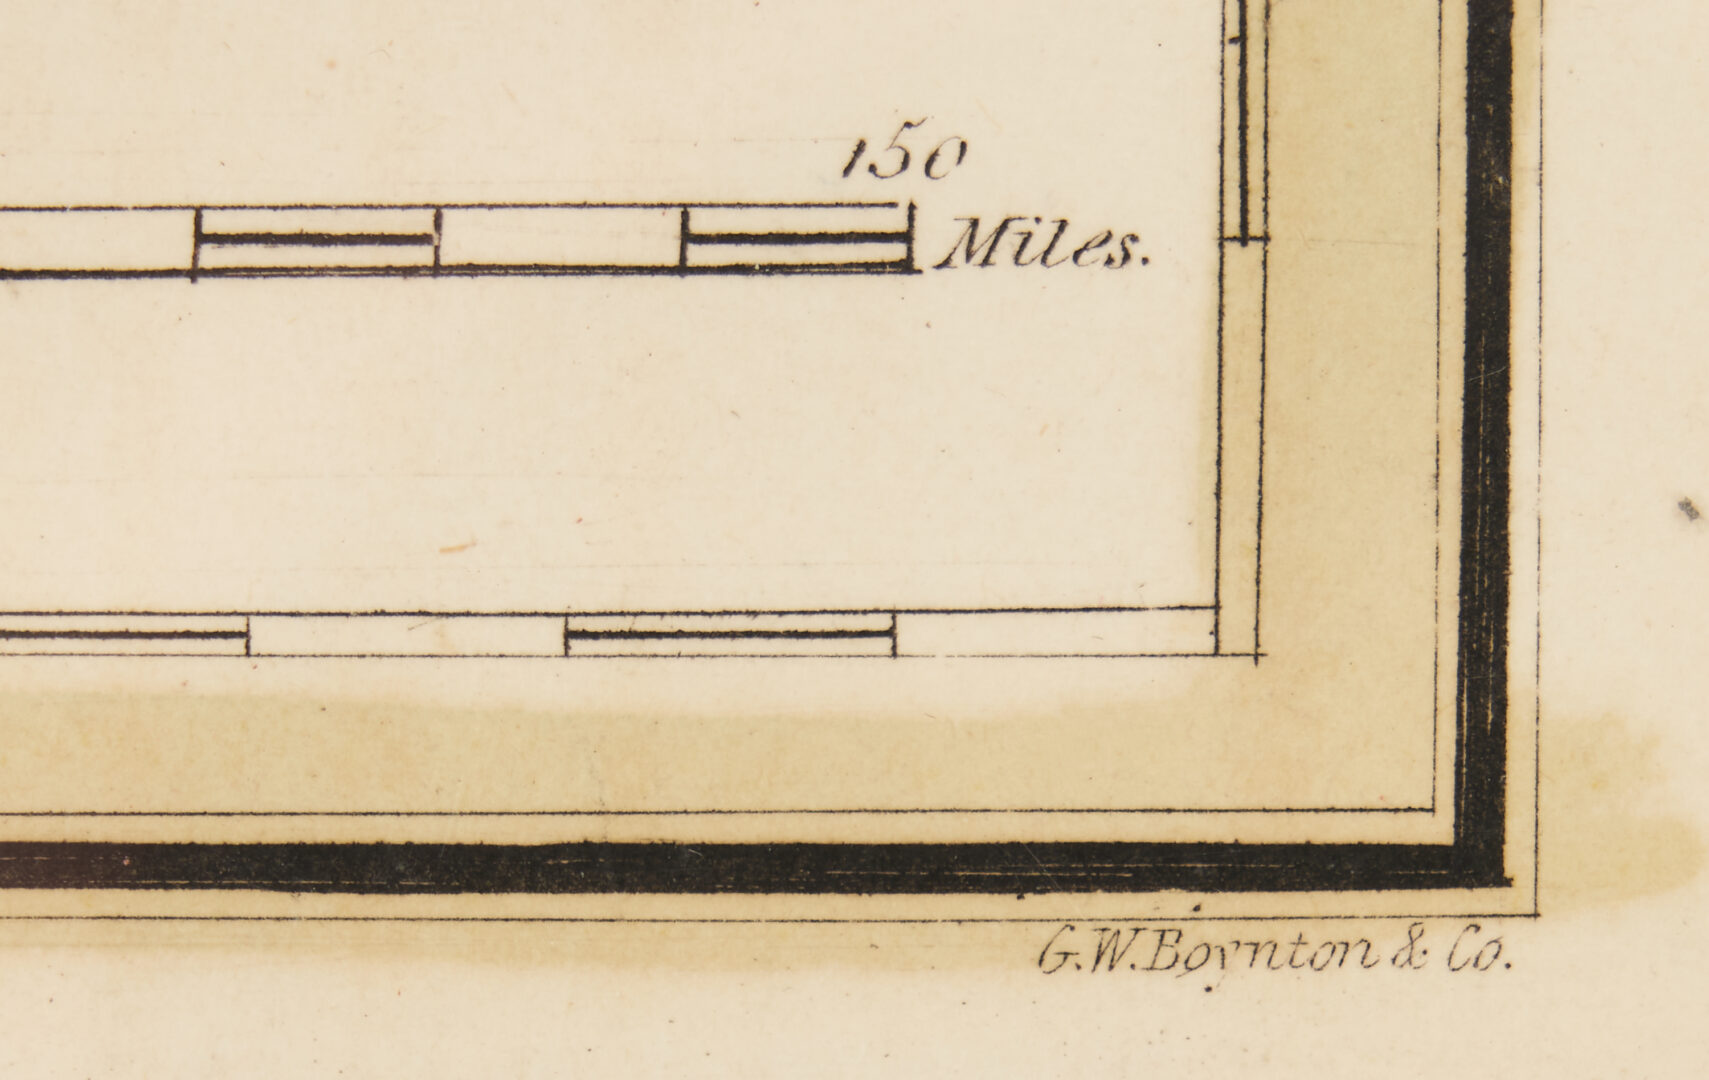 Lot 512: 2 TN & KY Maps incl. Samuel Lewis, 1804